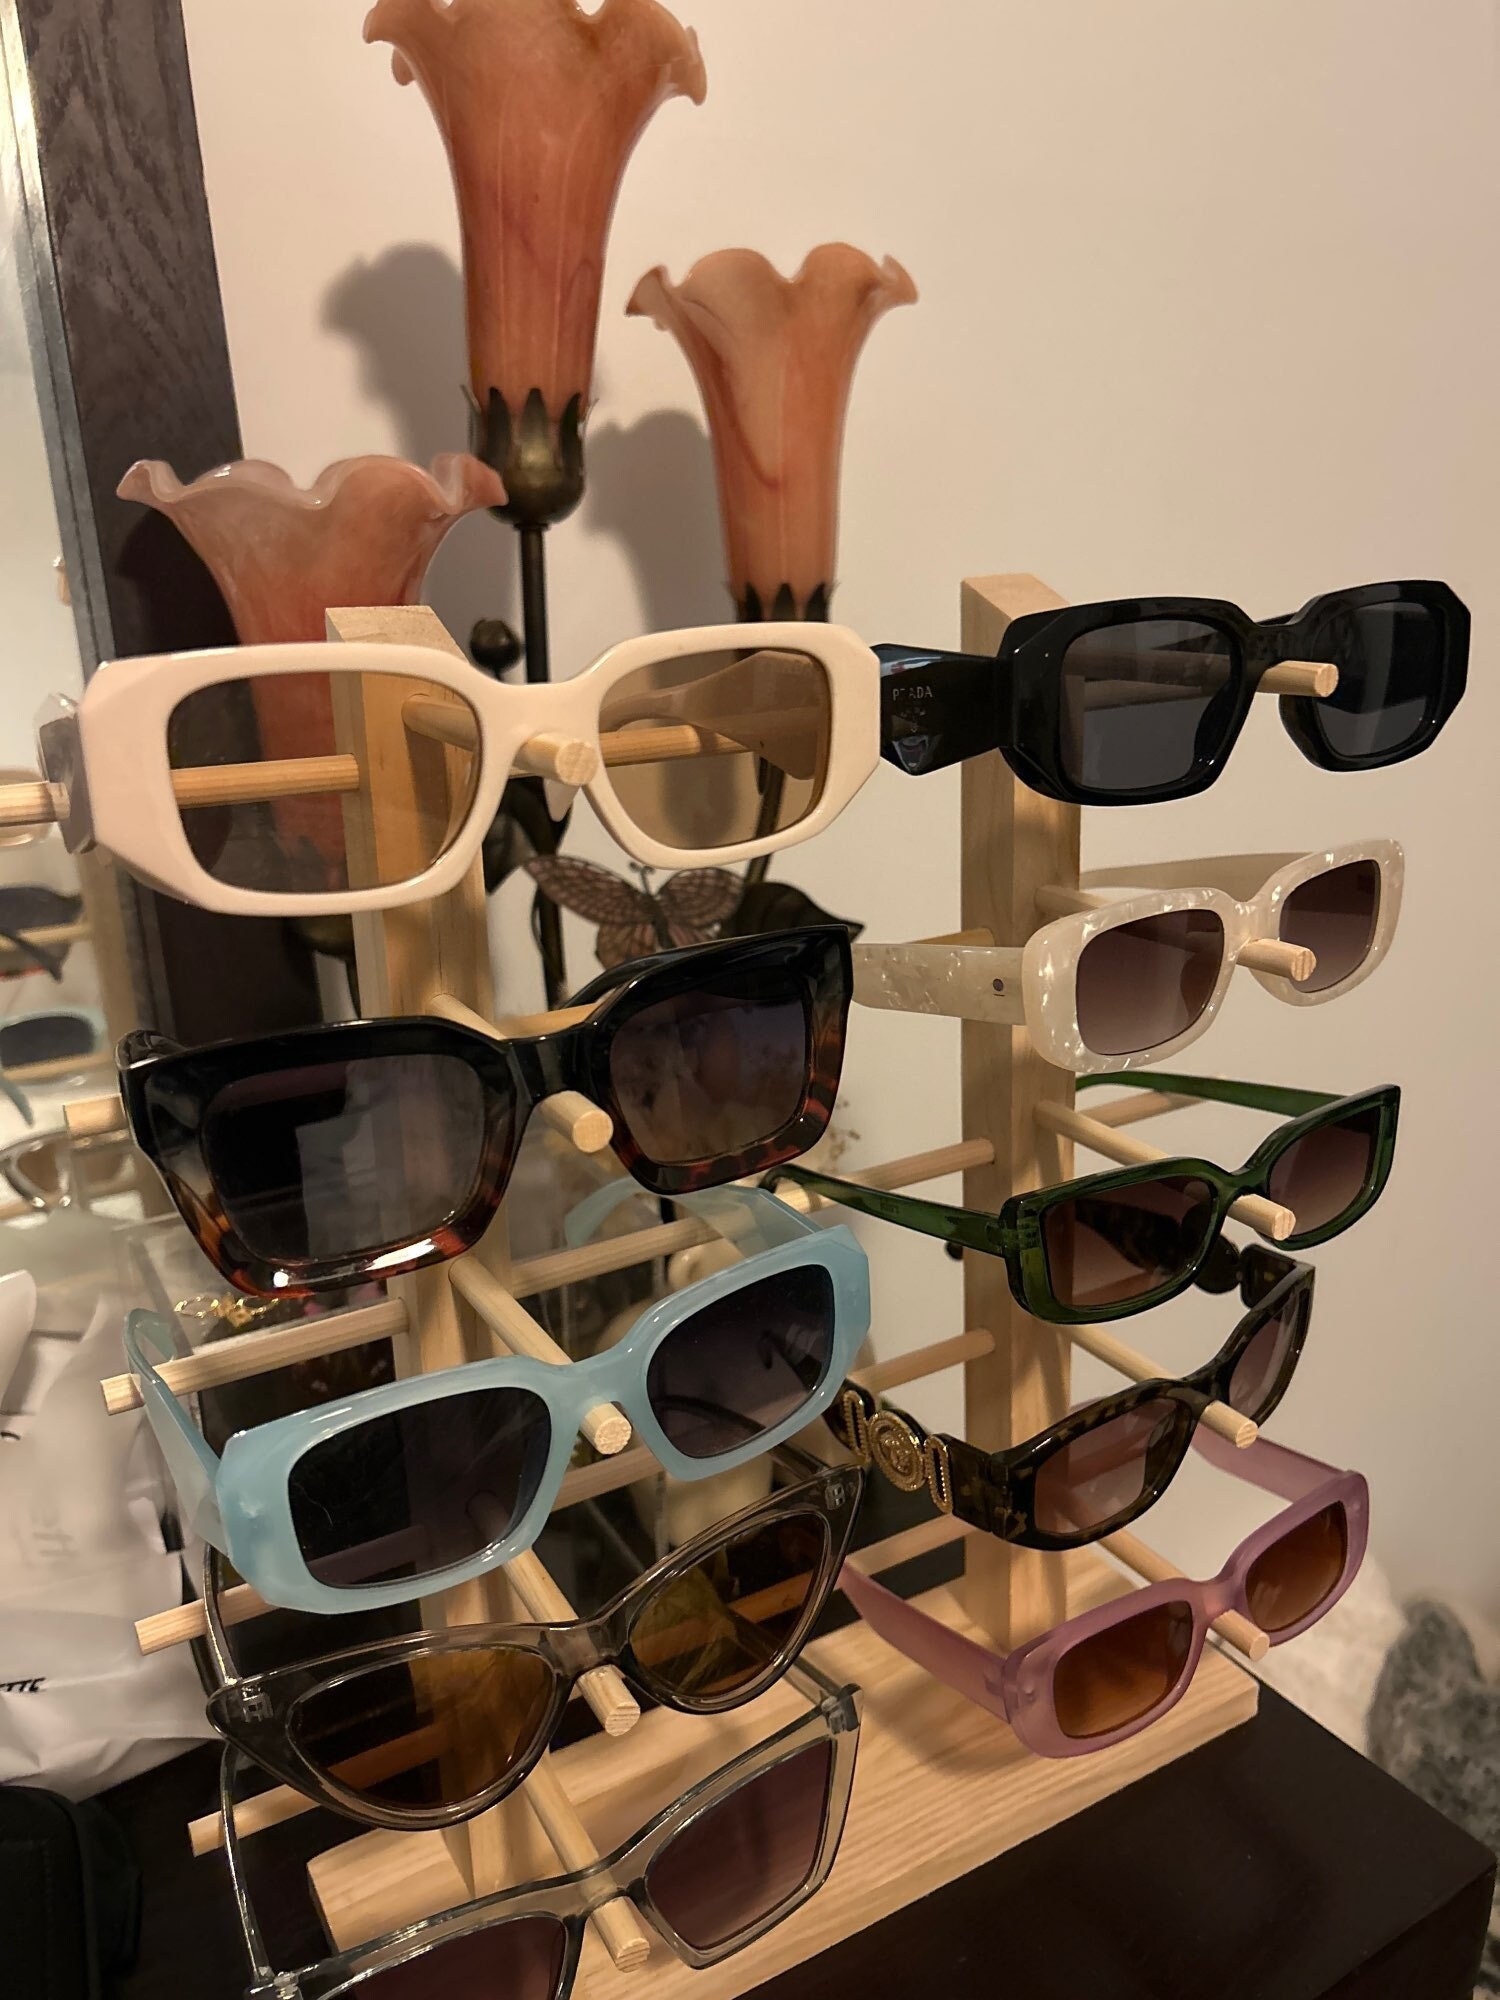 Brillen- und Sonnenbrillen-Organizer zum Aufhängen an der Wand,  Brillenhalter, Aufbewahrung, Display, Taschenmontage, Aufhänger an der Wand